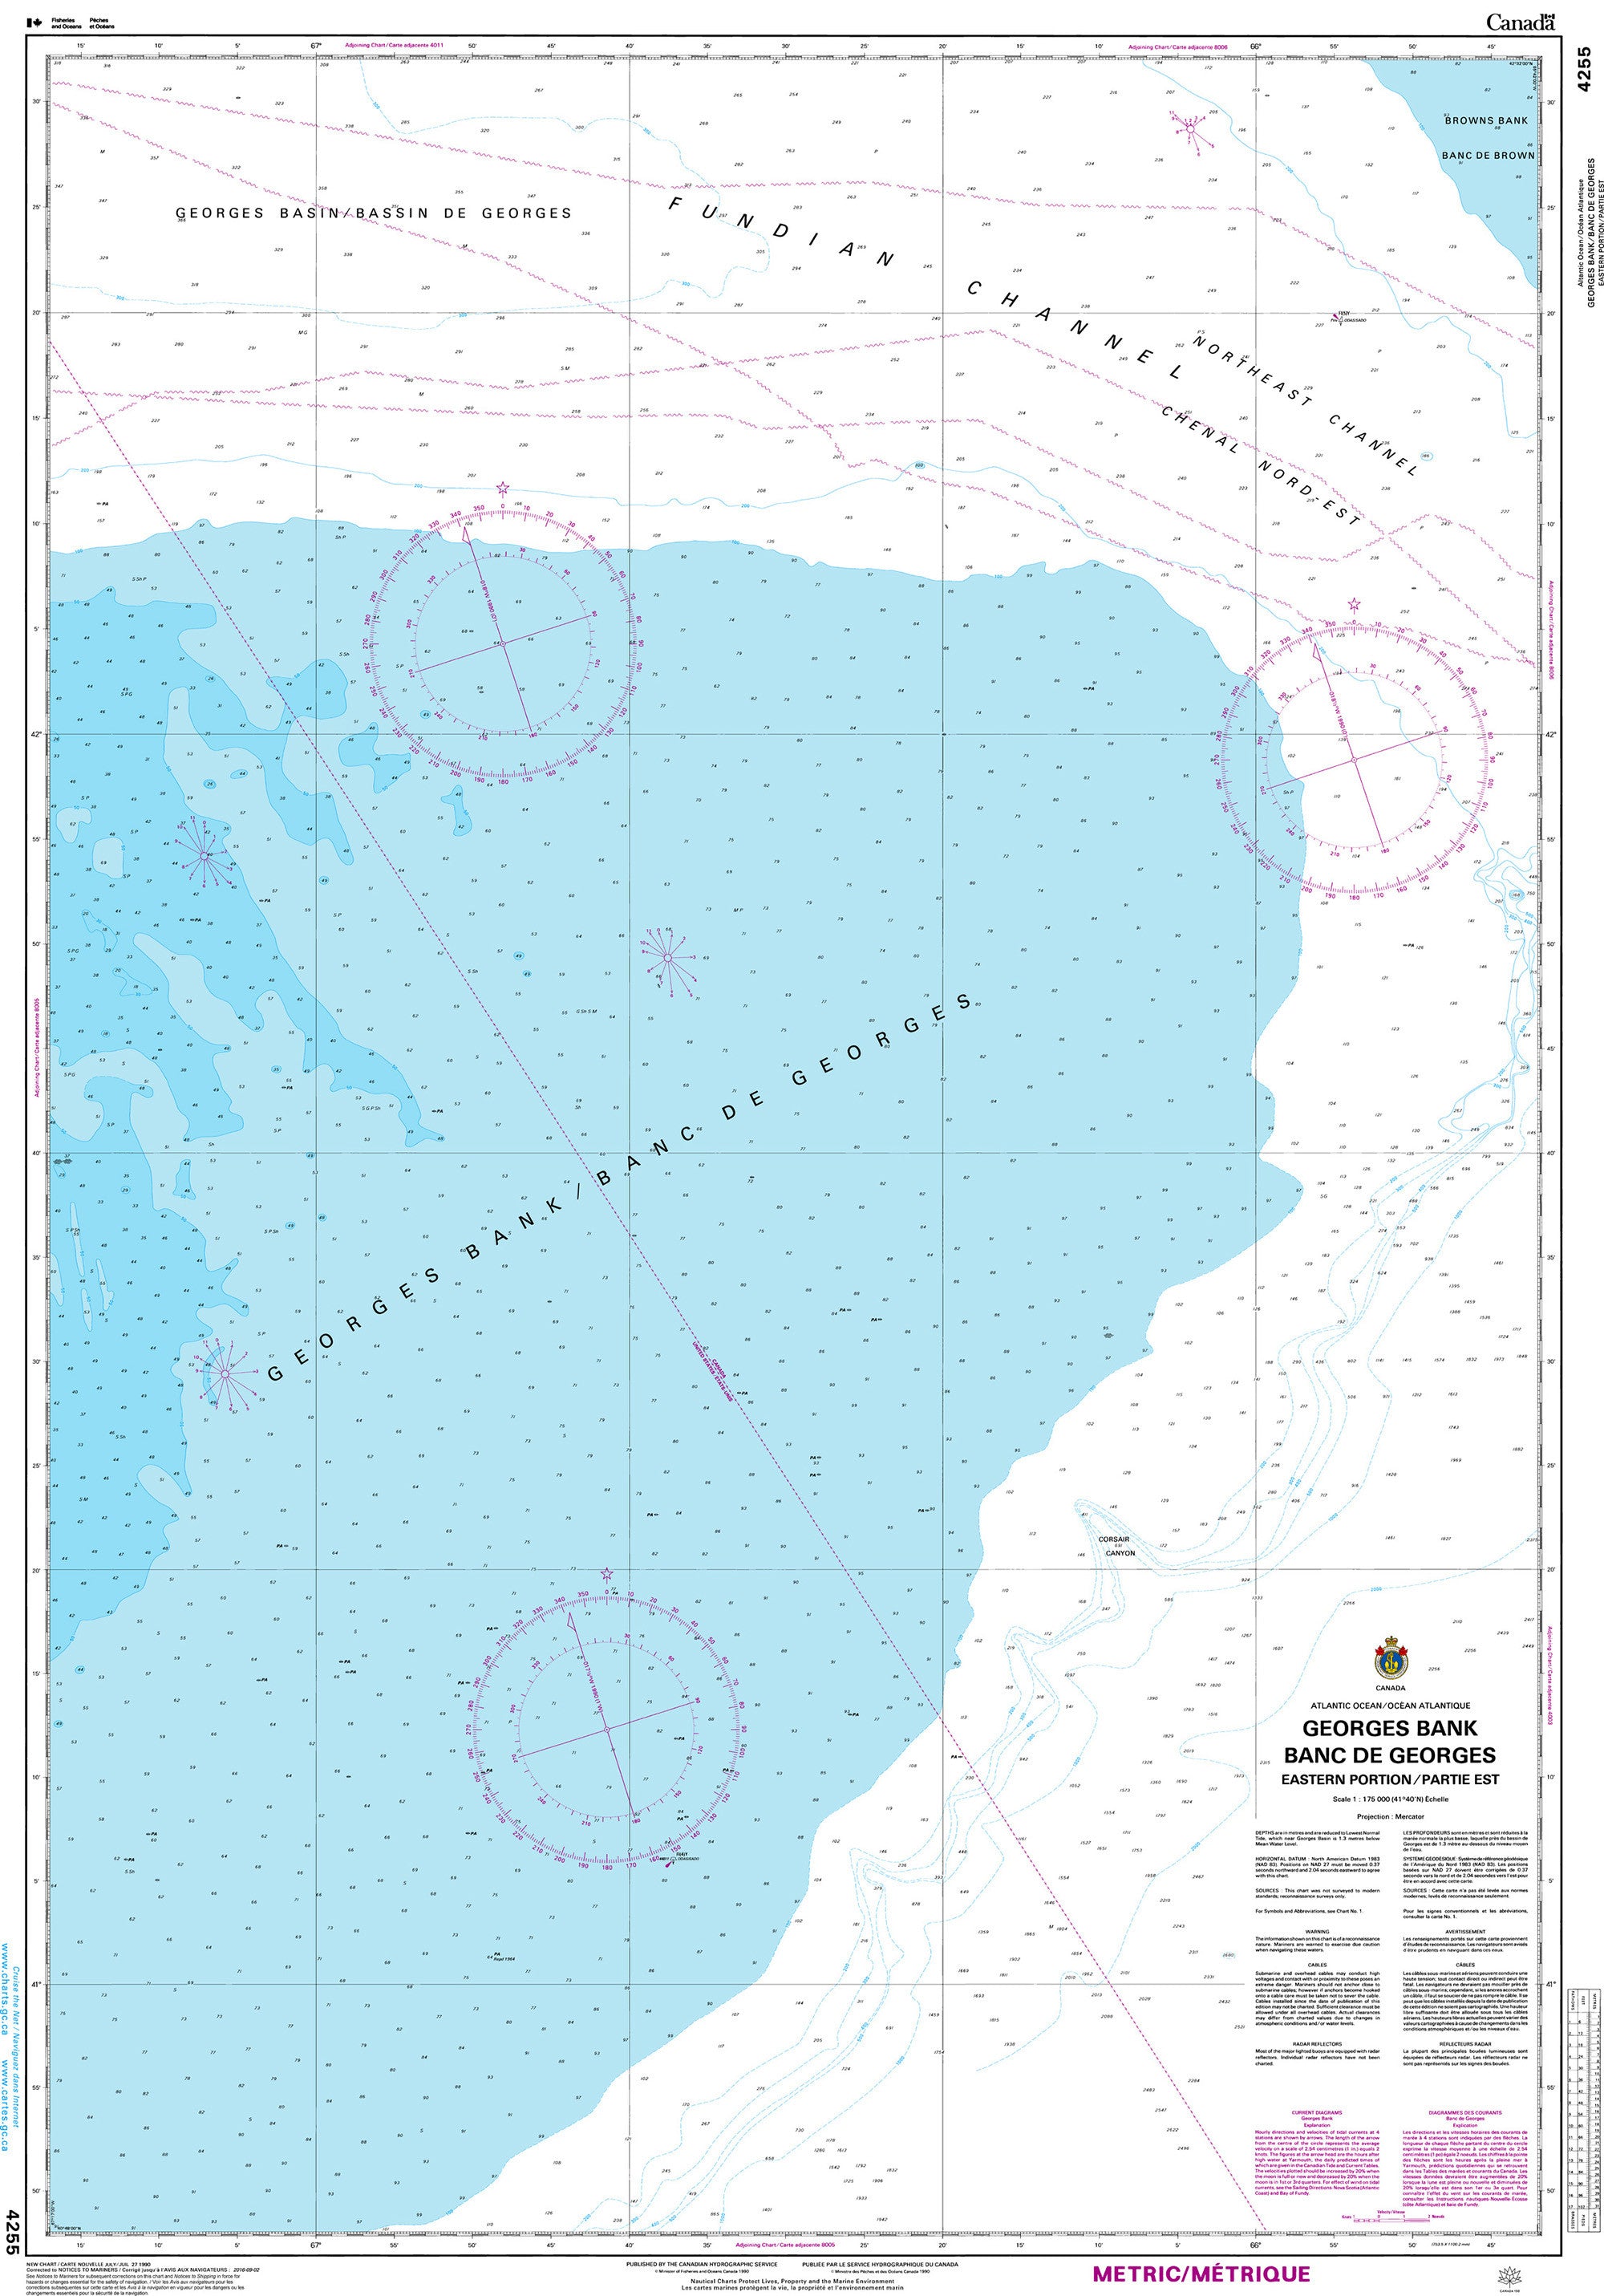 Canadian Hydrographic Service Nautical Chart CHS4255: Georges Bank/Banc de Georges - Eastern Portion/Partie Est